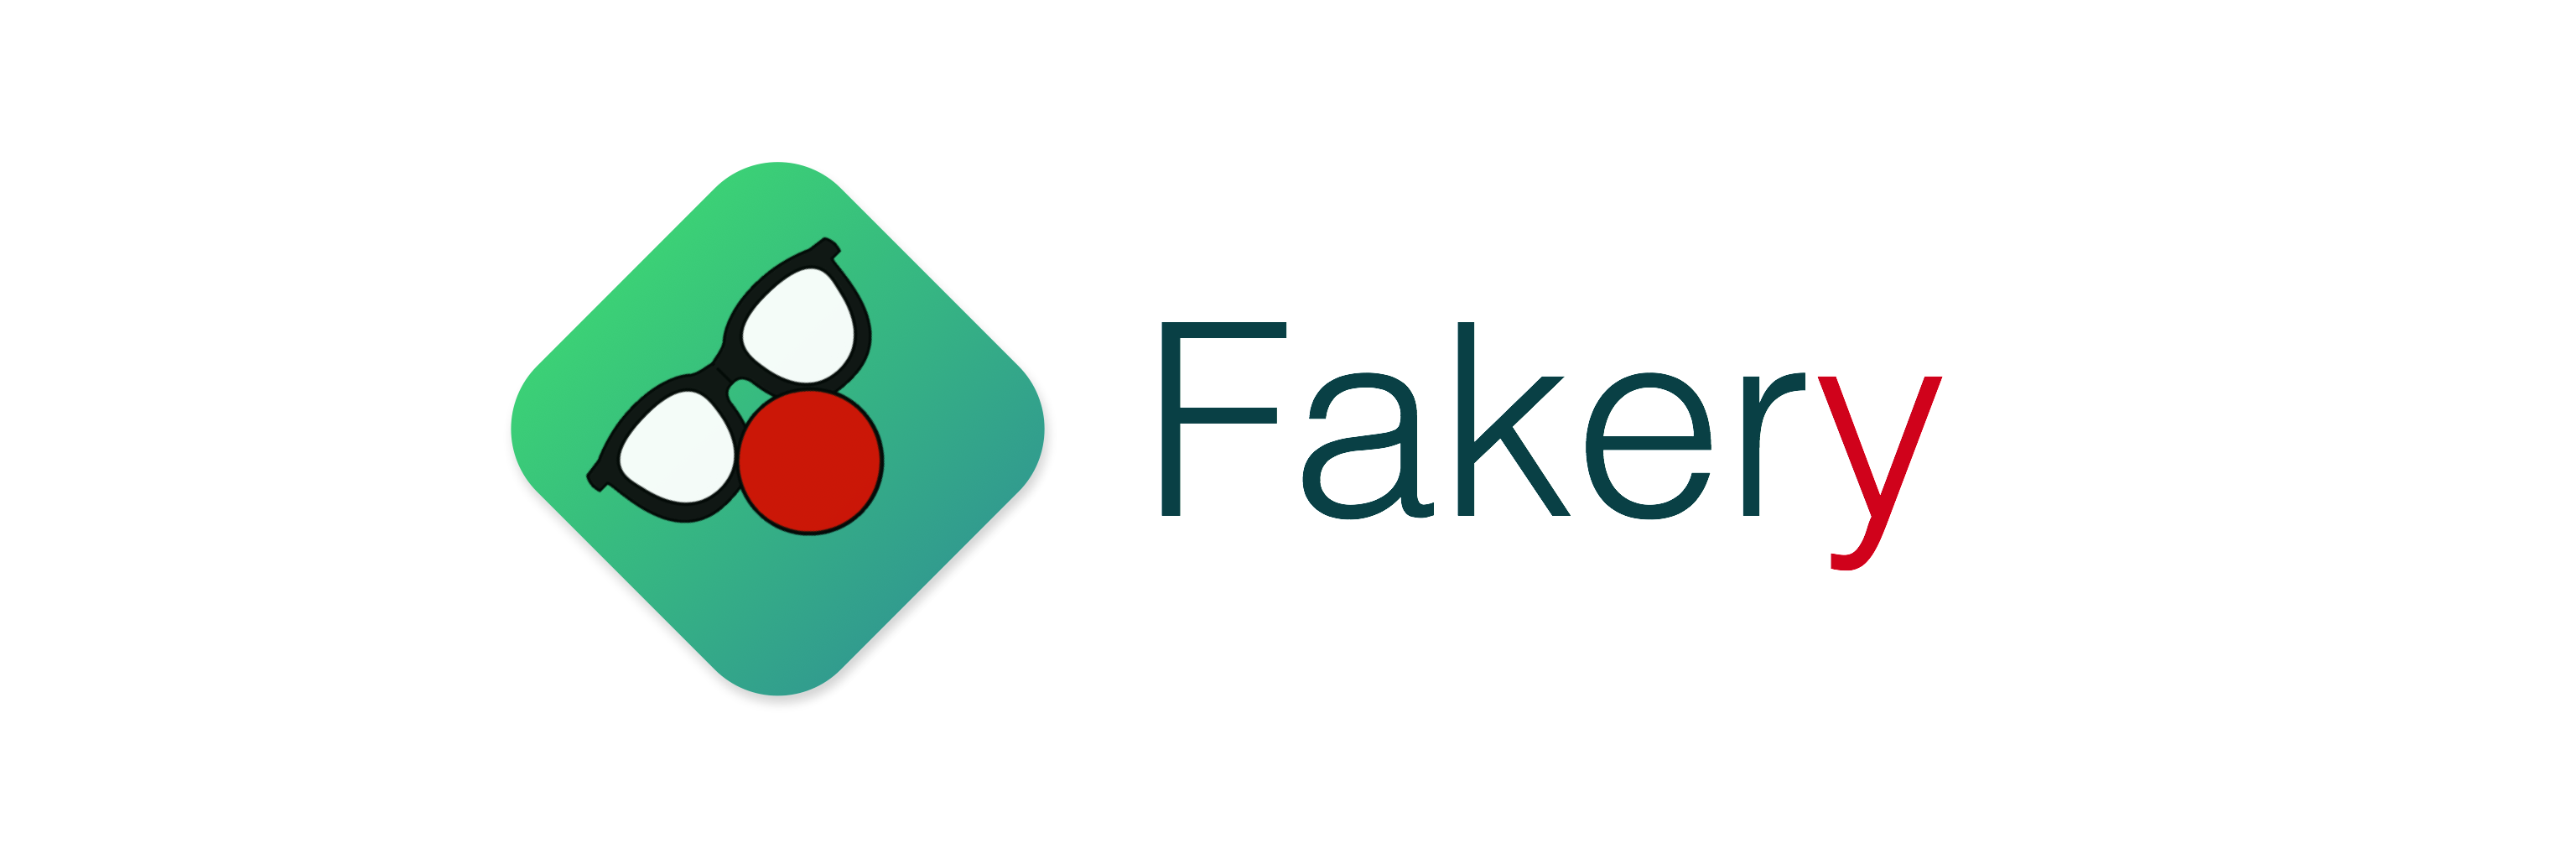  Fake  Logos 